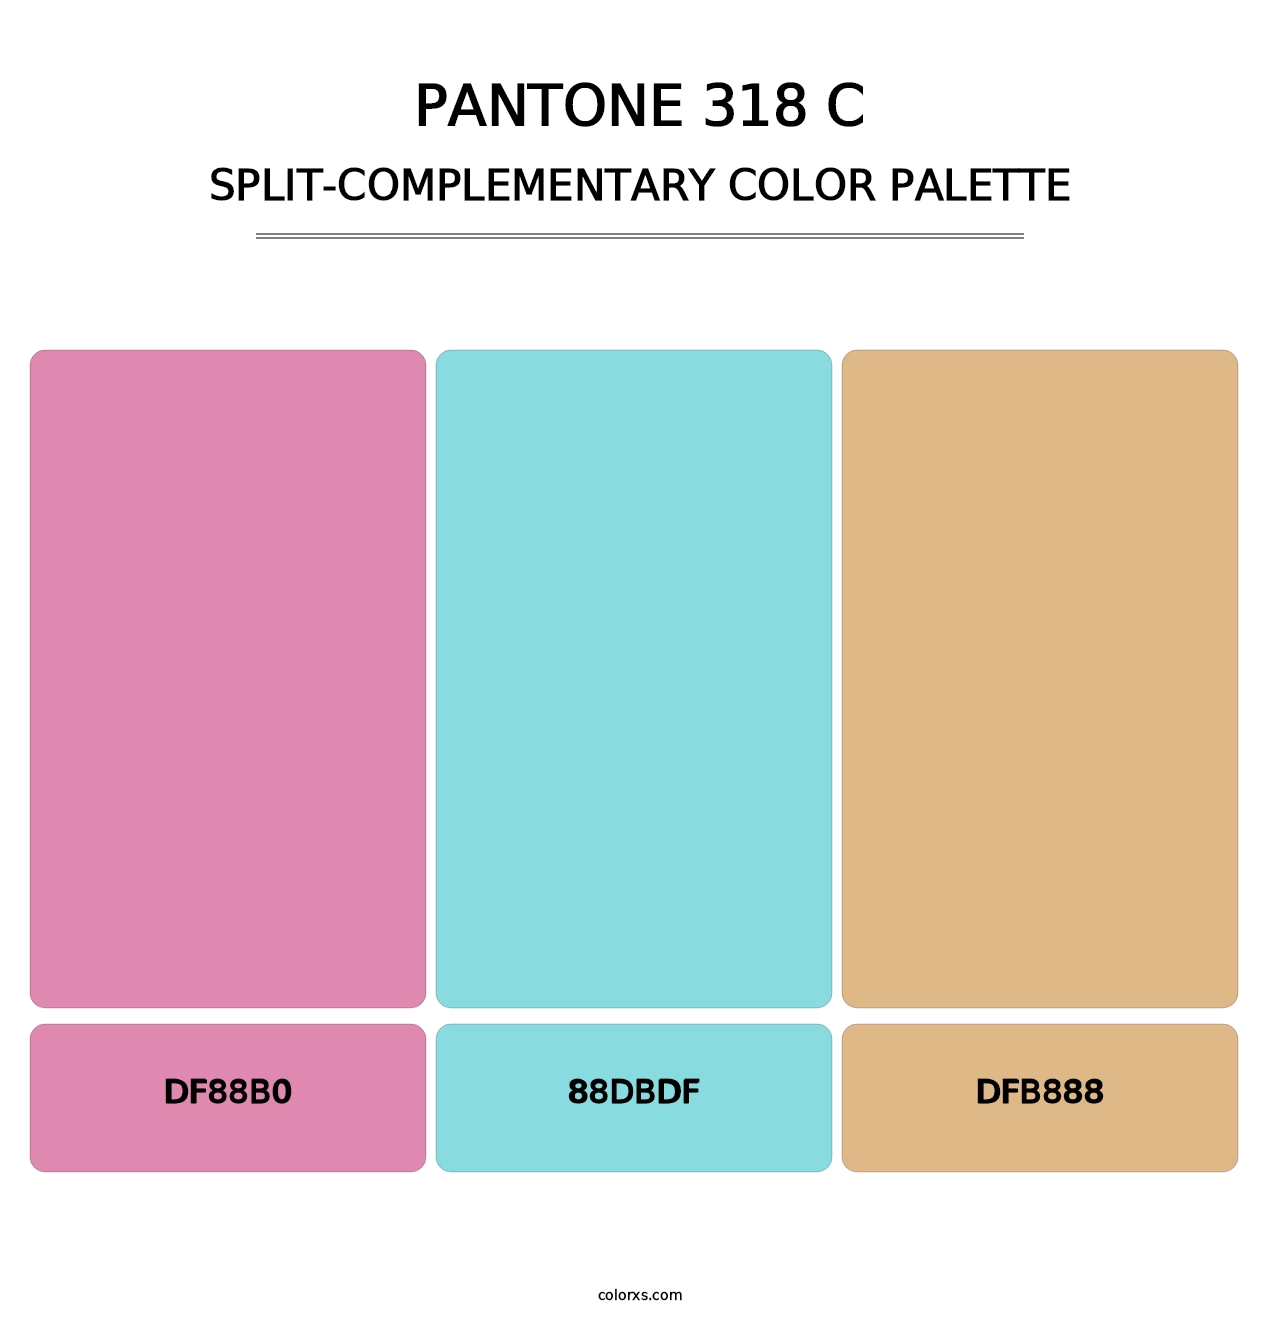 PANTONE 318 C - Split-Complementary Color Palette